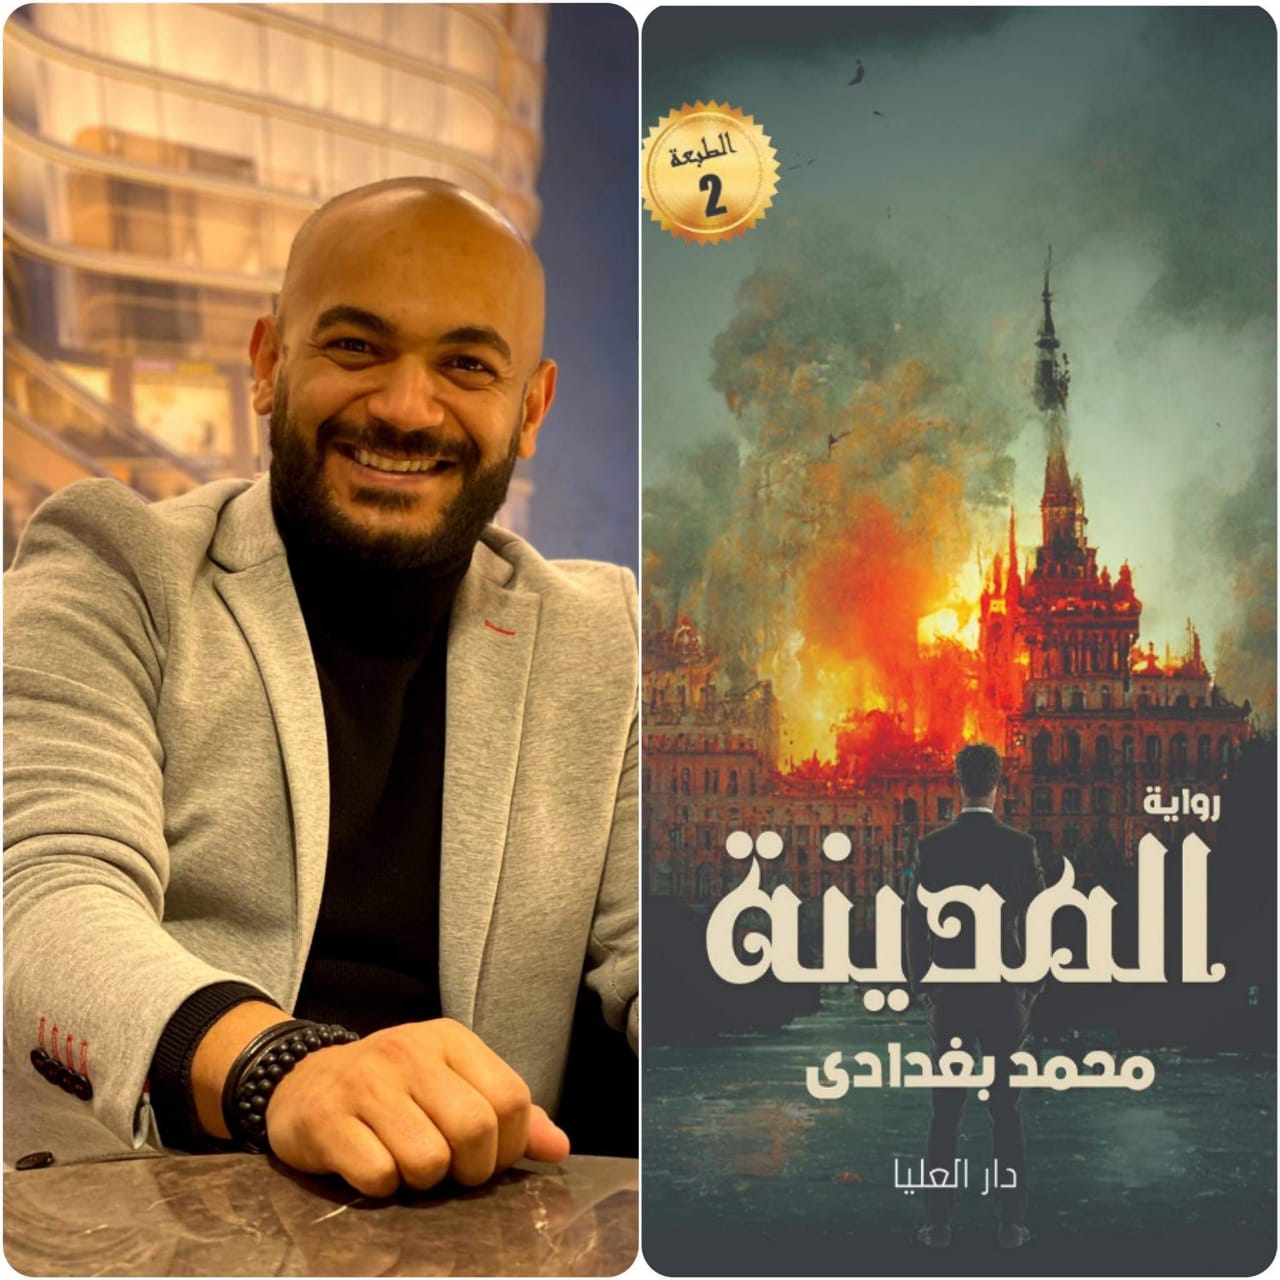 الكاتب محمد البغدادي يطرح رواية جديدة بعنوان “المدينة ” تعرف علي التفاصيل 